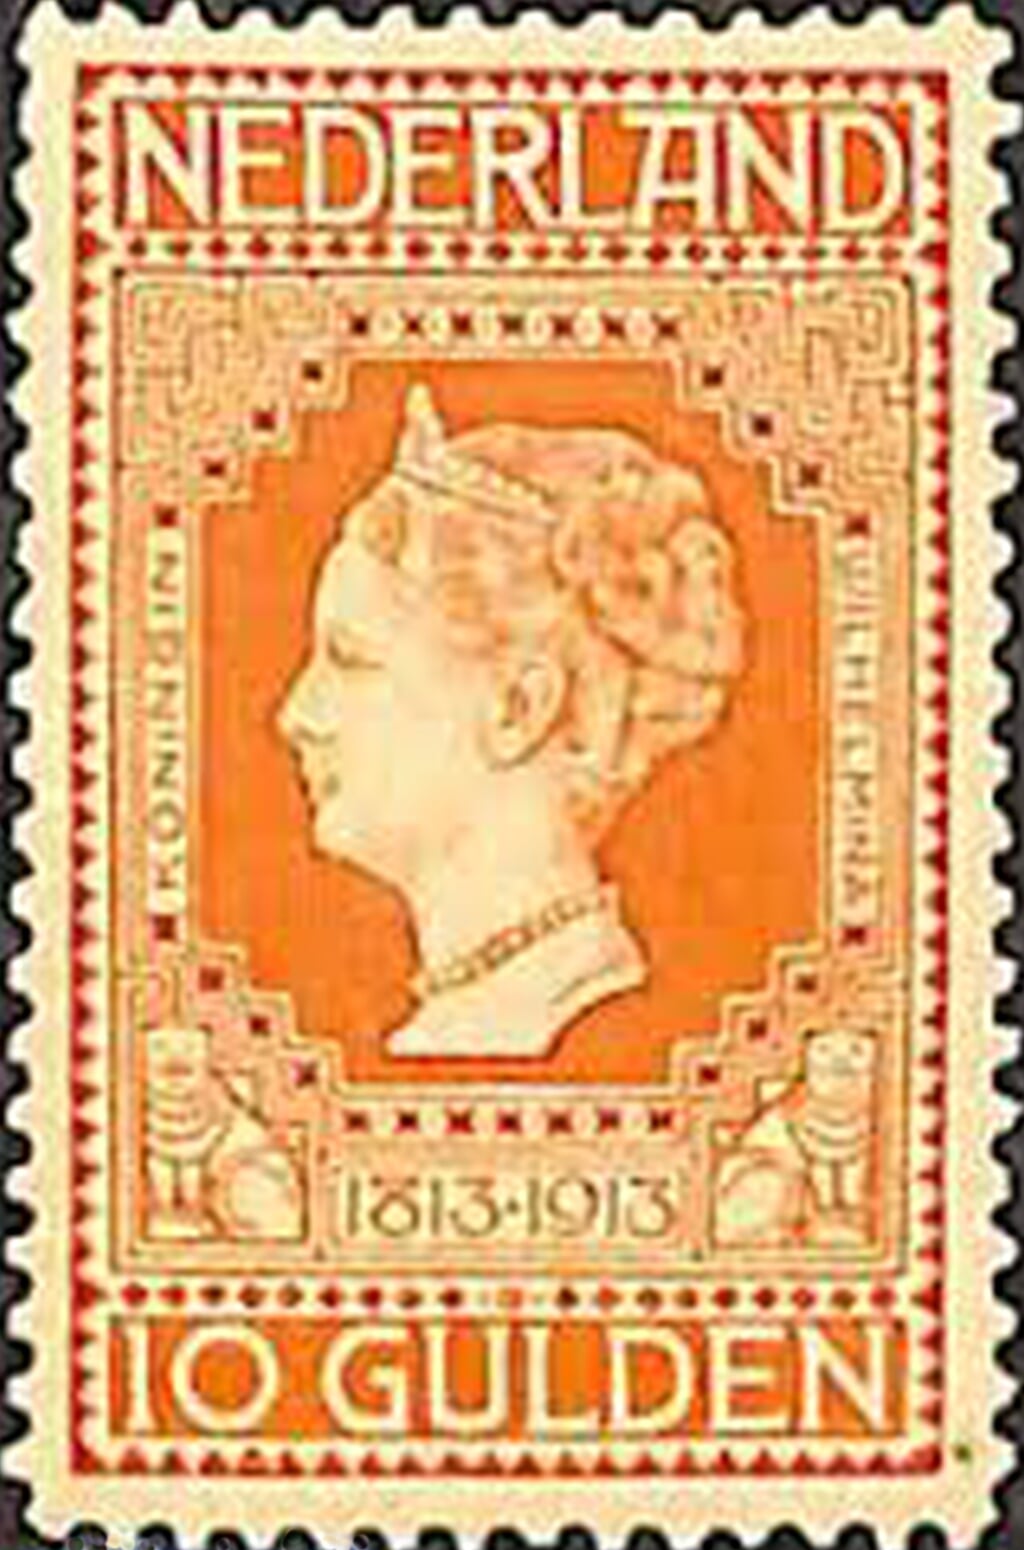 Postzegel uit 1913 ontworpen door De Bazel.